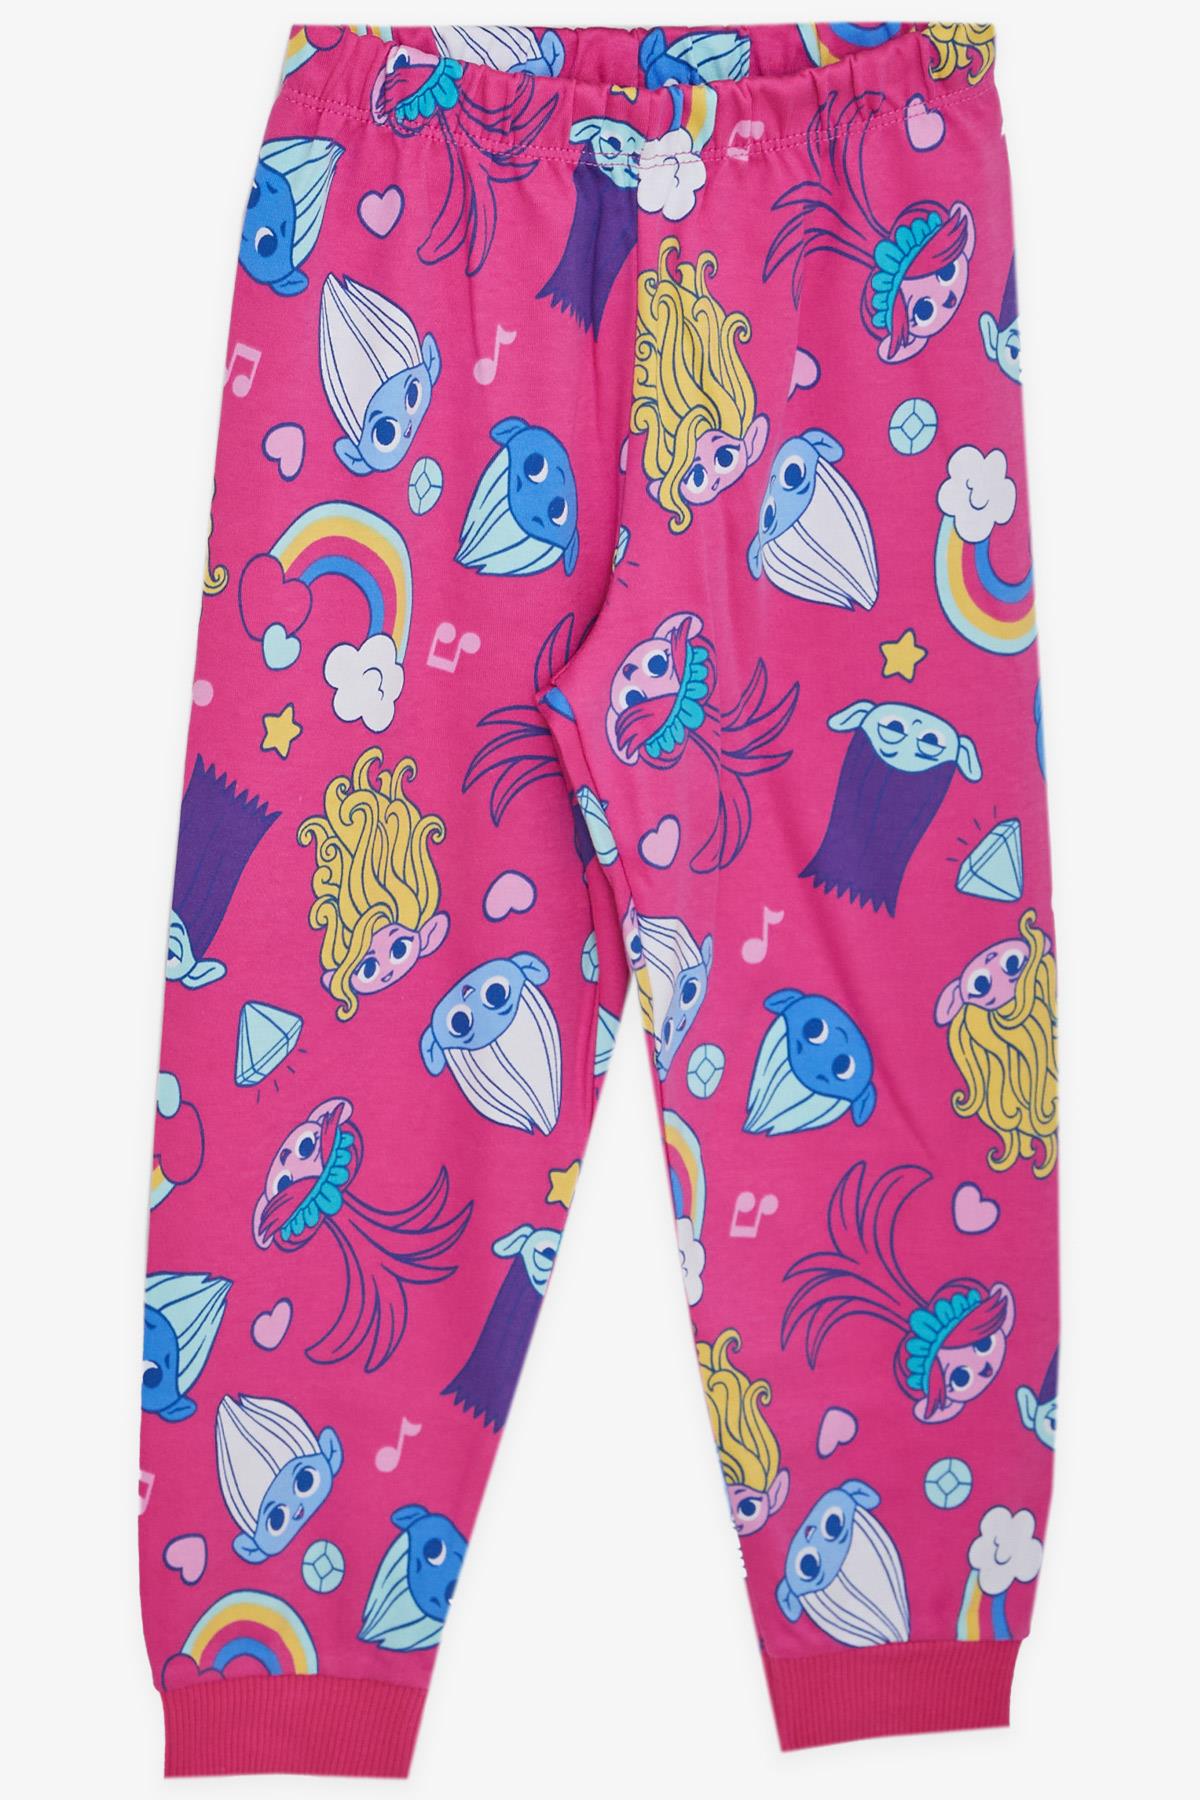 Kız Çocuk Pijama Takımı Şirinler Desenli Fuşya 1-4 Yaş - Eğlenceli Kız  Çocuk Pijamaları| Breeze